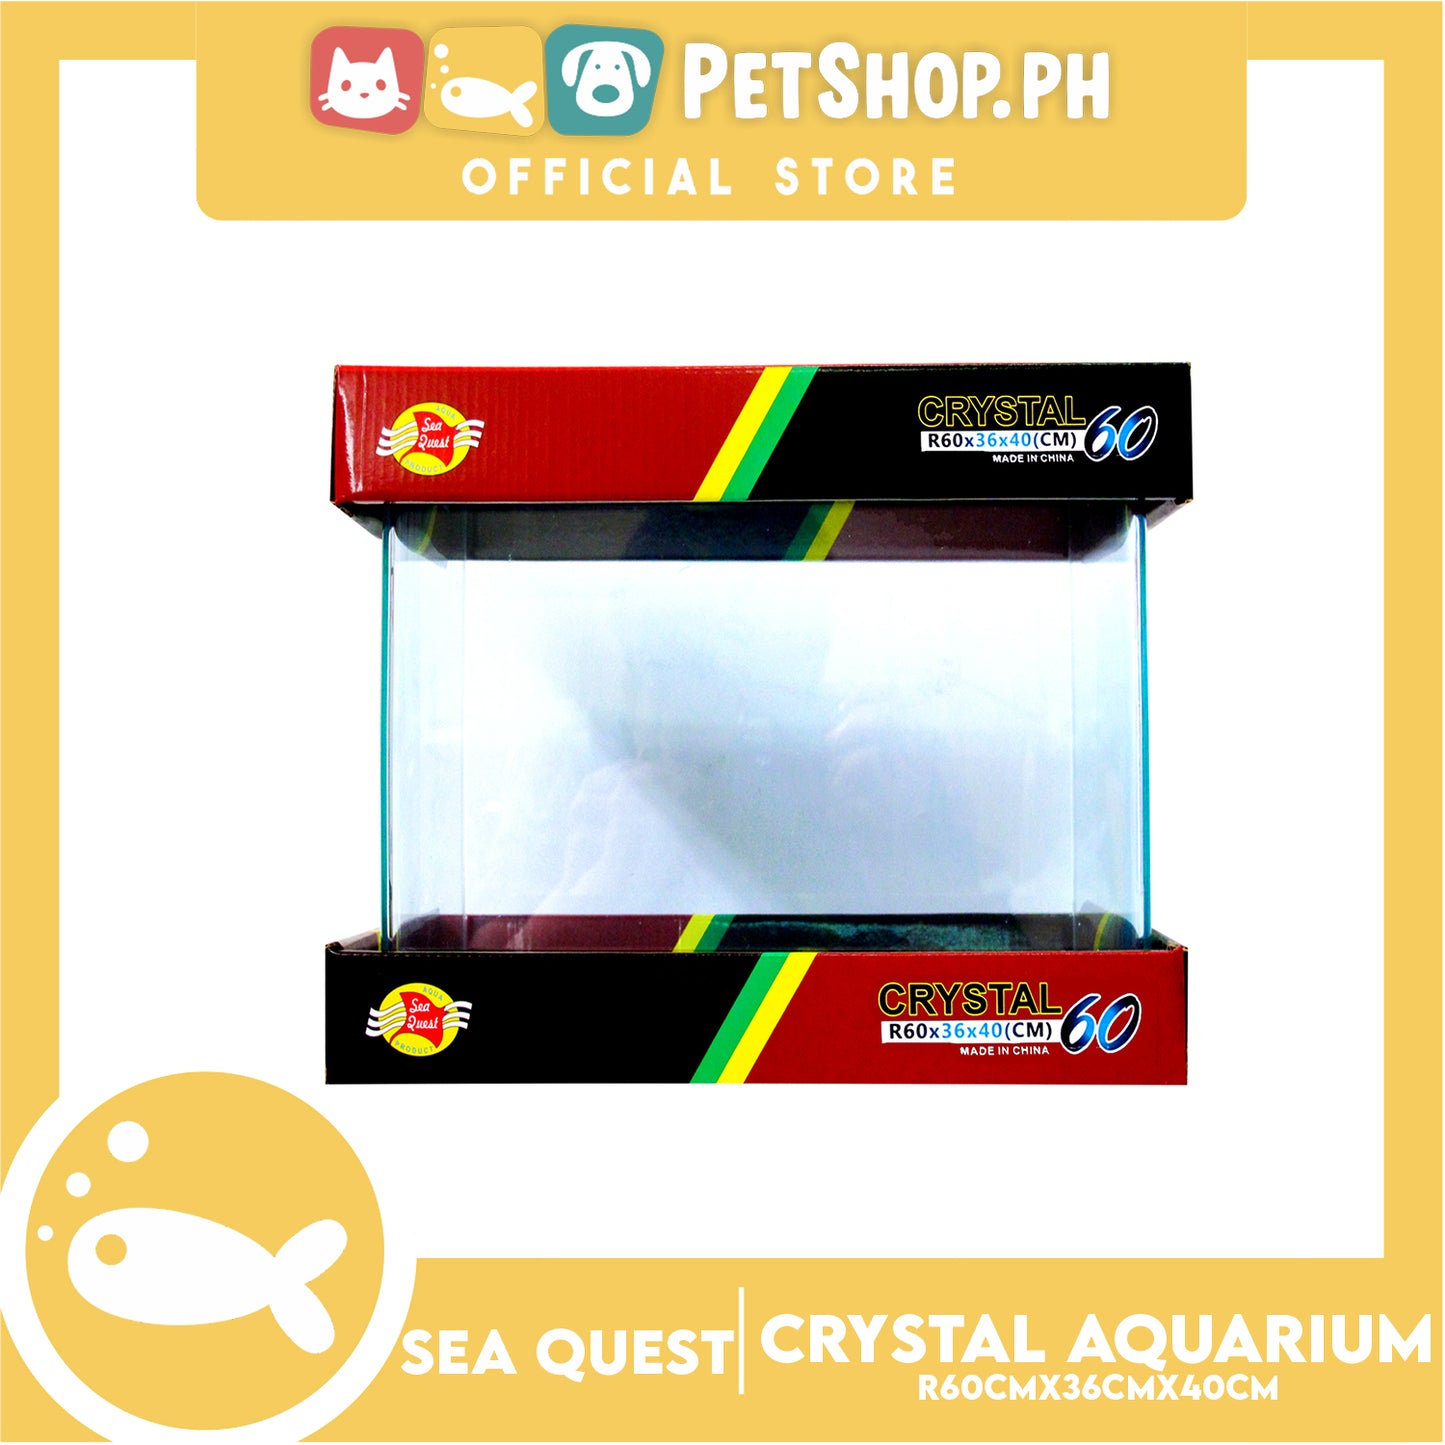 Sea Quest Aquarium Crystal 60